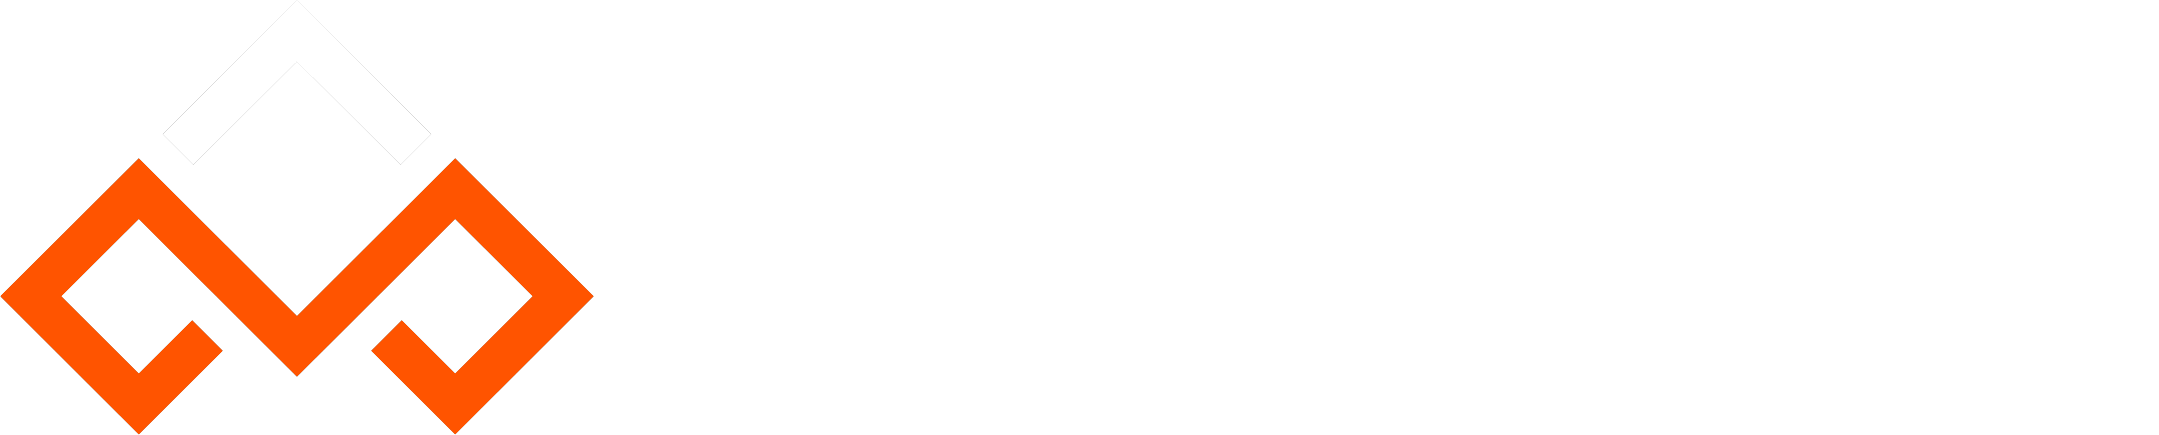 MetaBucks